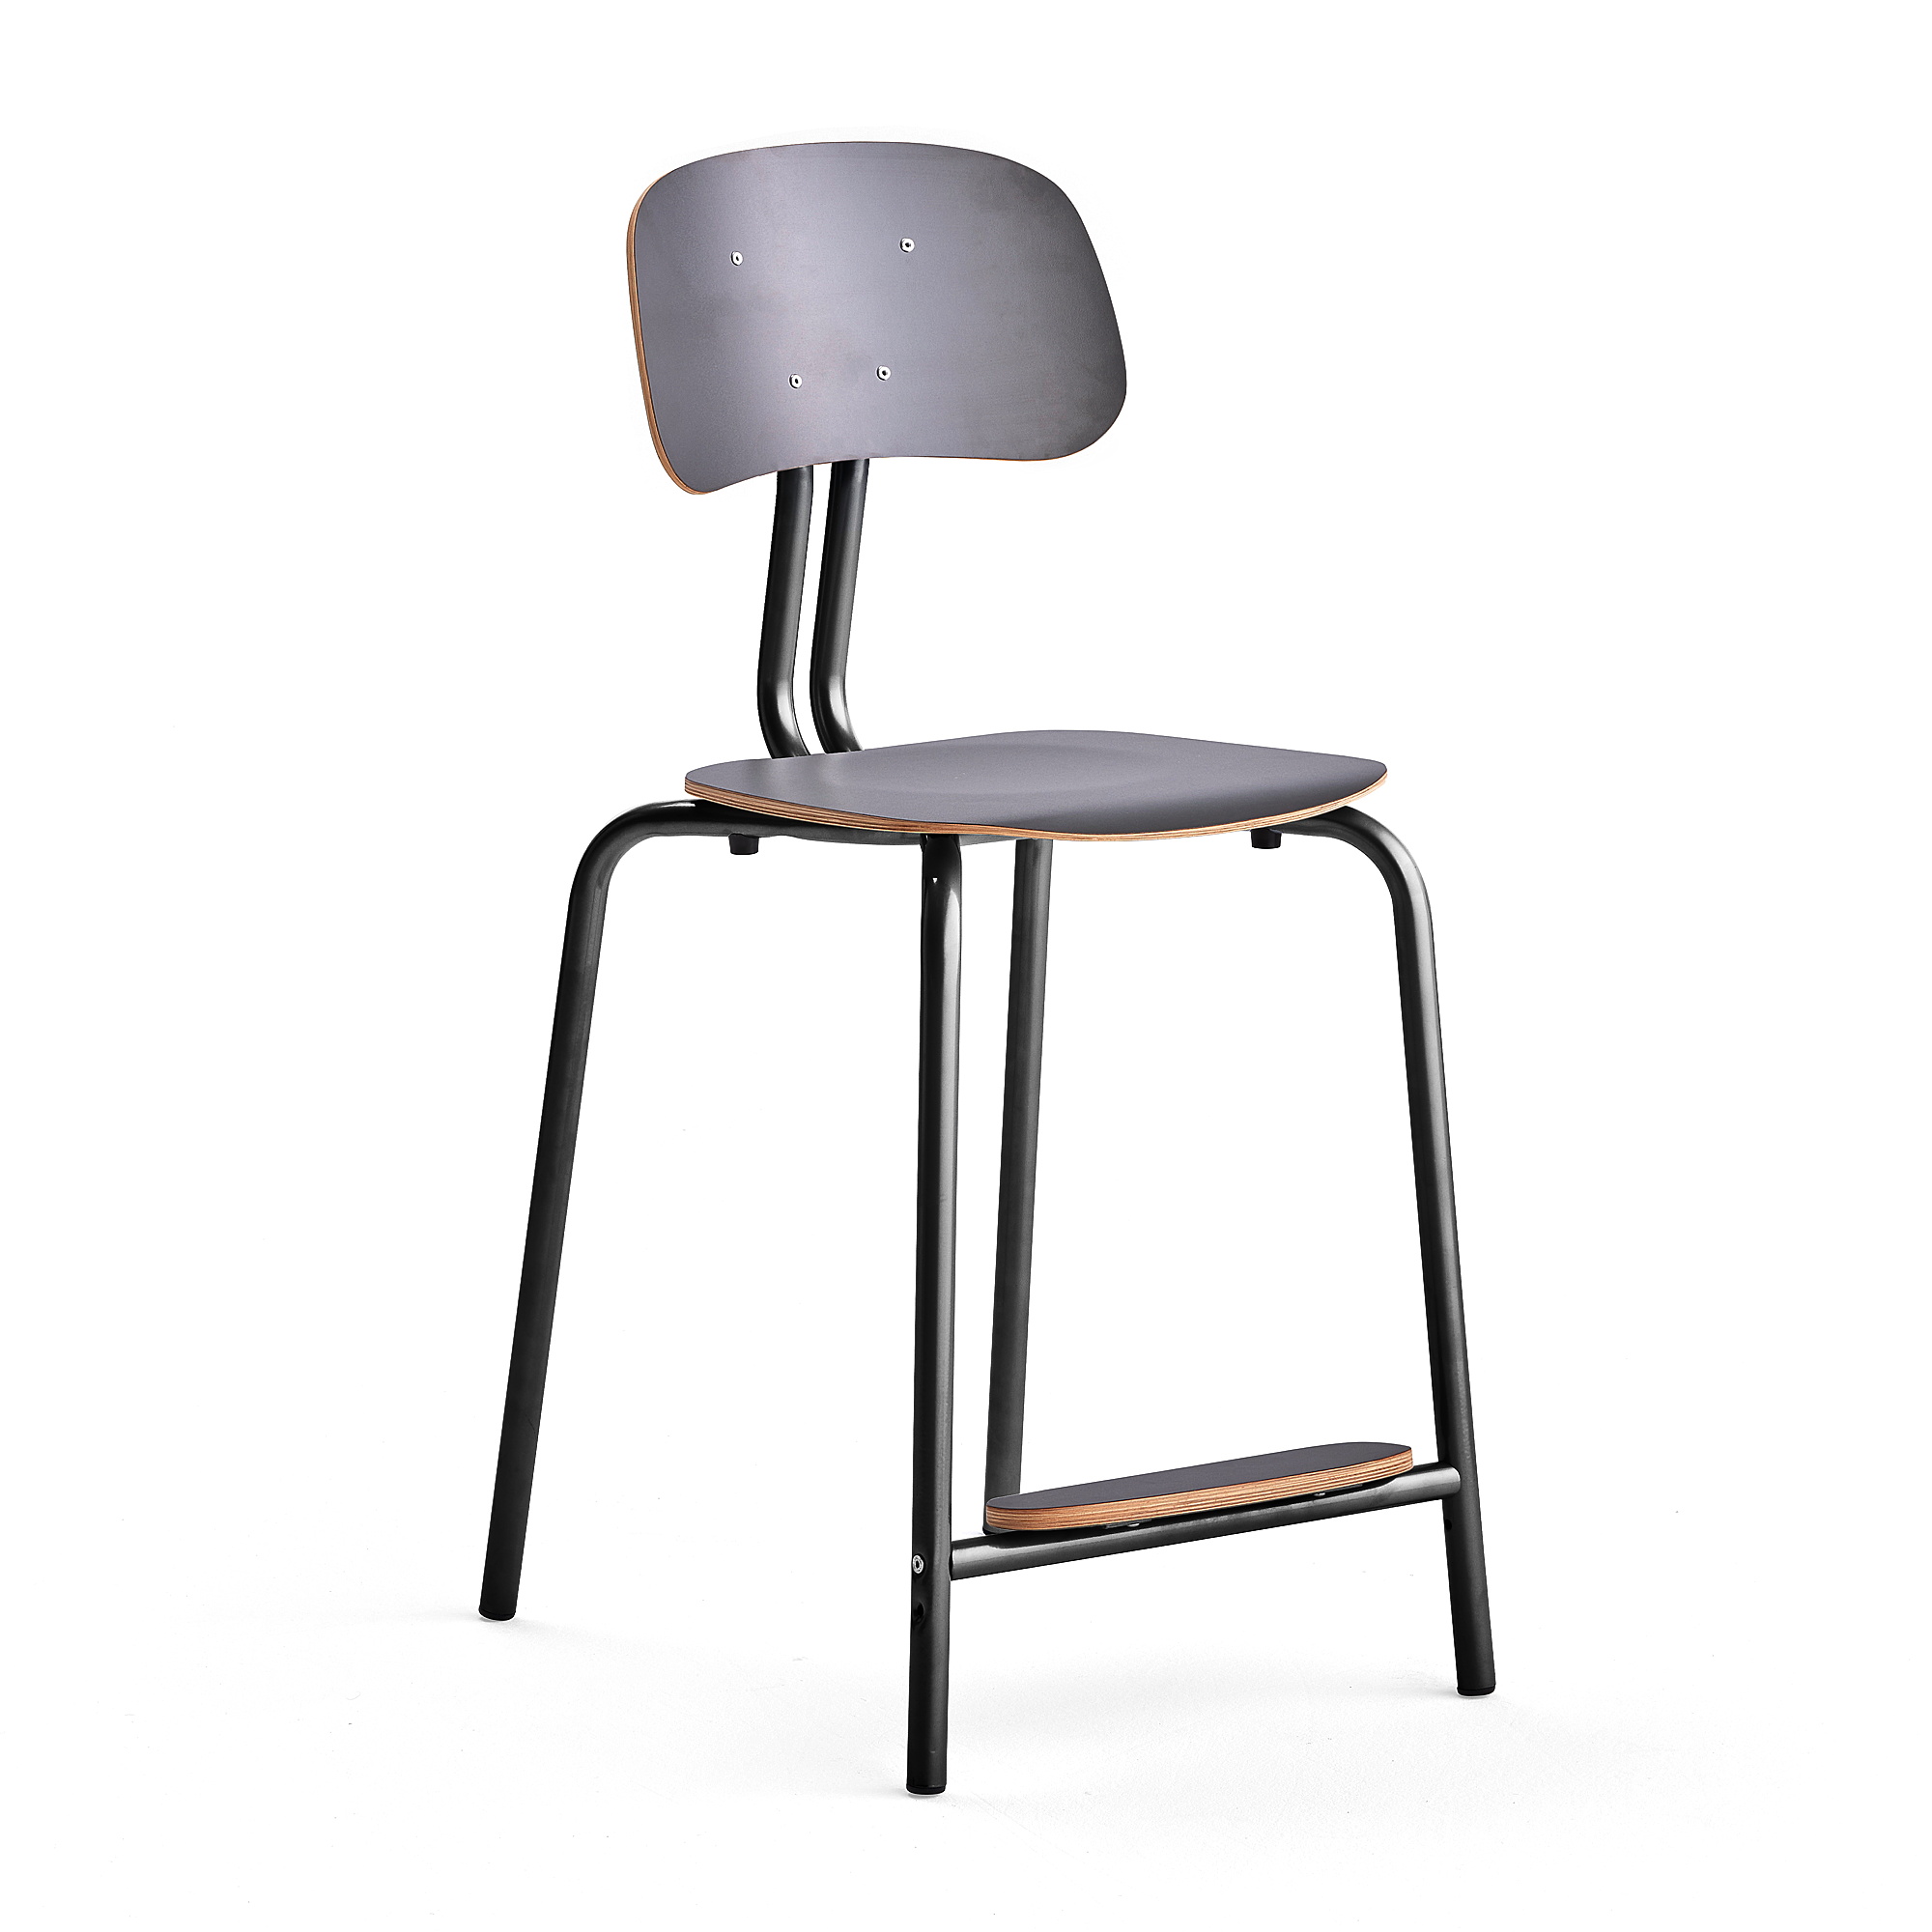 Školní židle YNGVE, 4 nohy, výška 610 mm, antracitově šedá